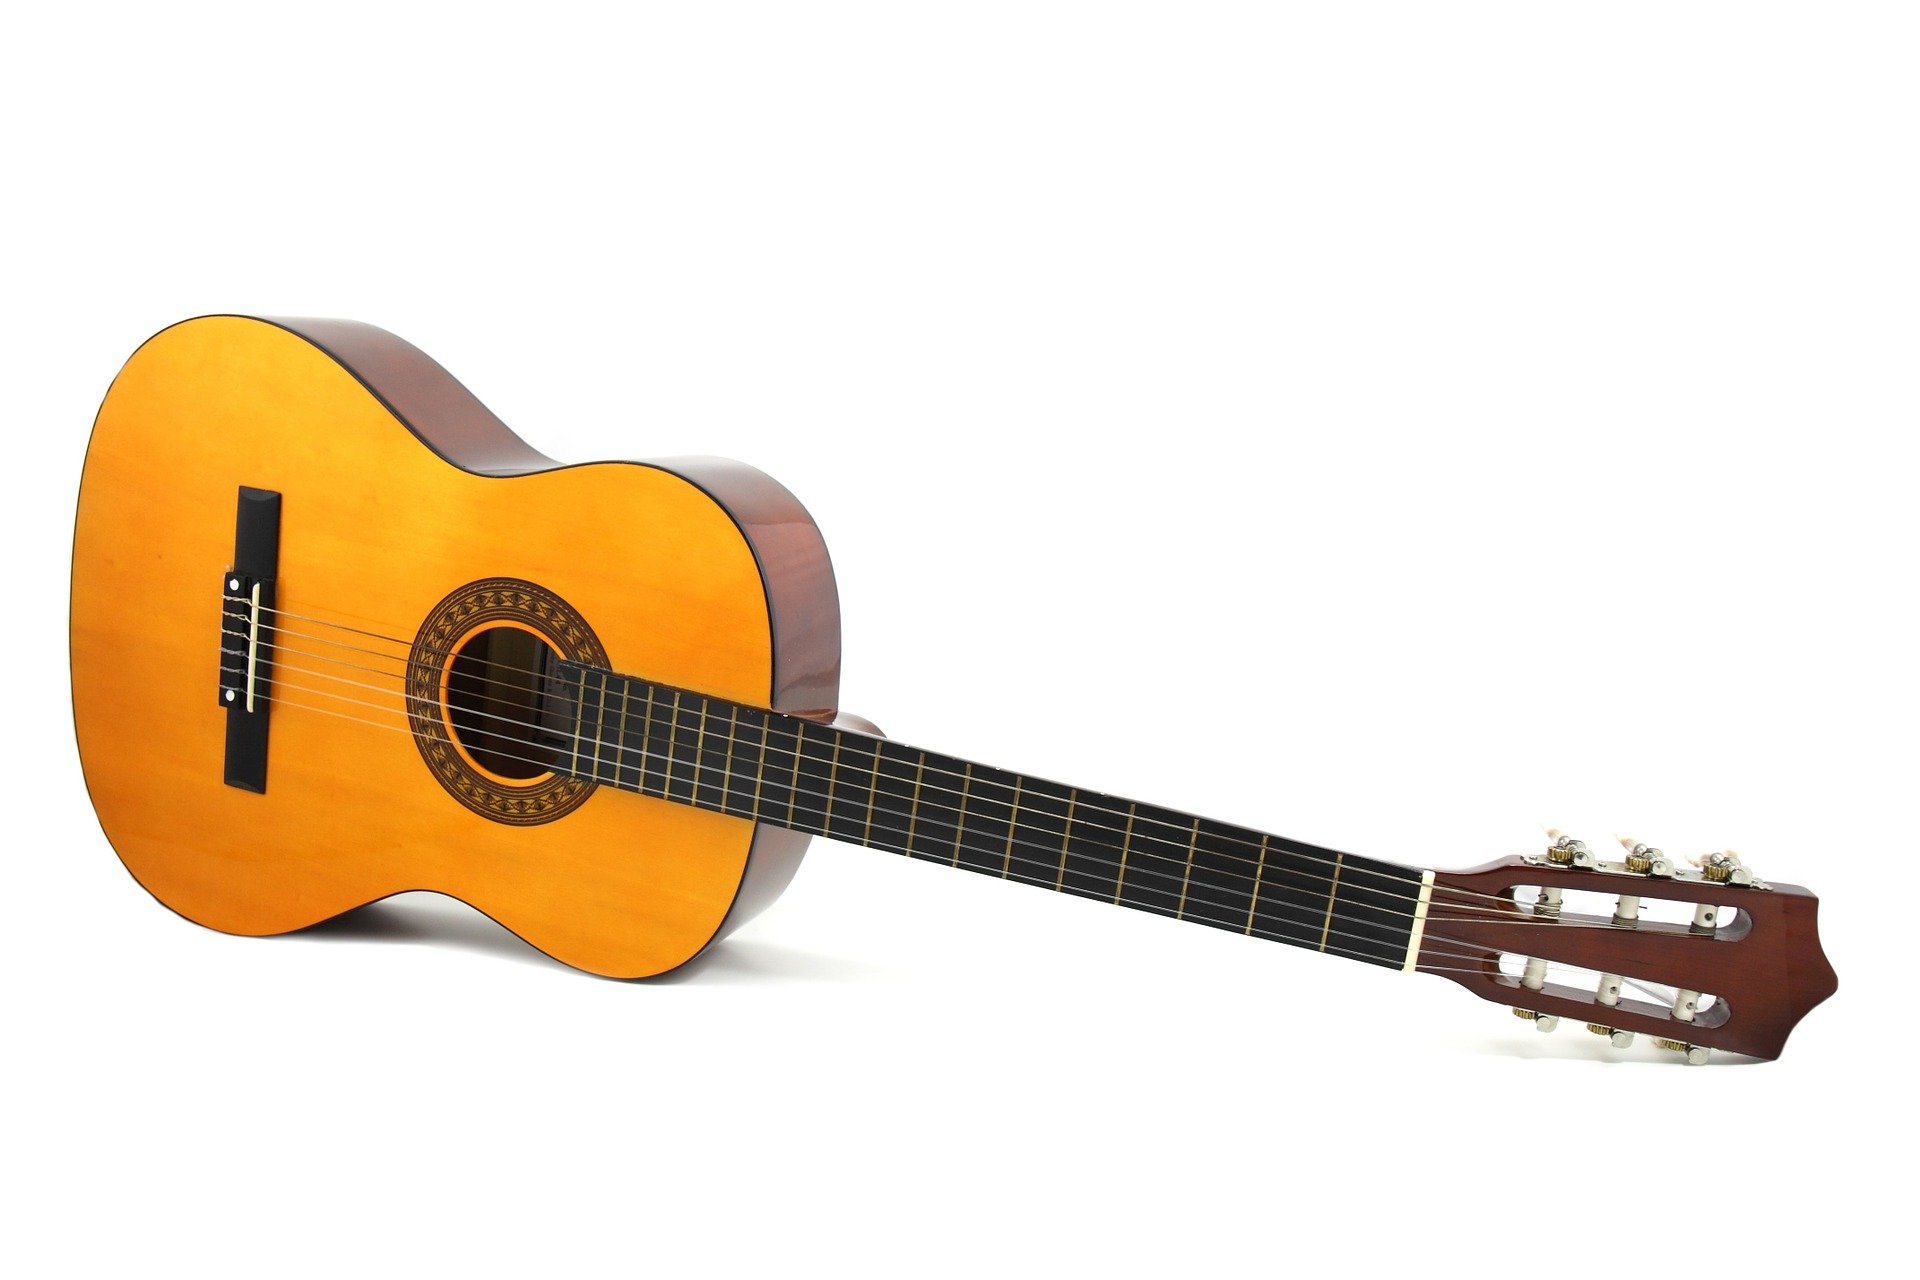 Классическая гитара. Источник фото Pixabay.com